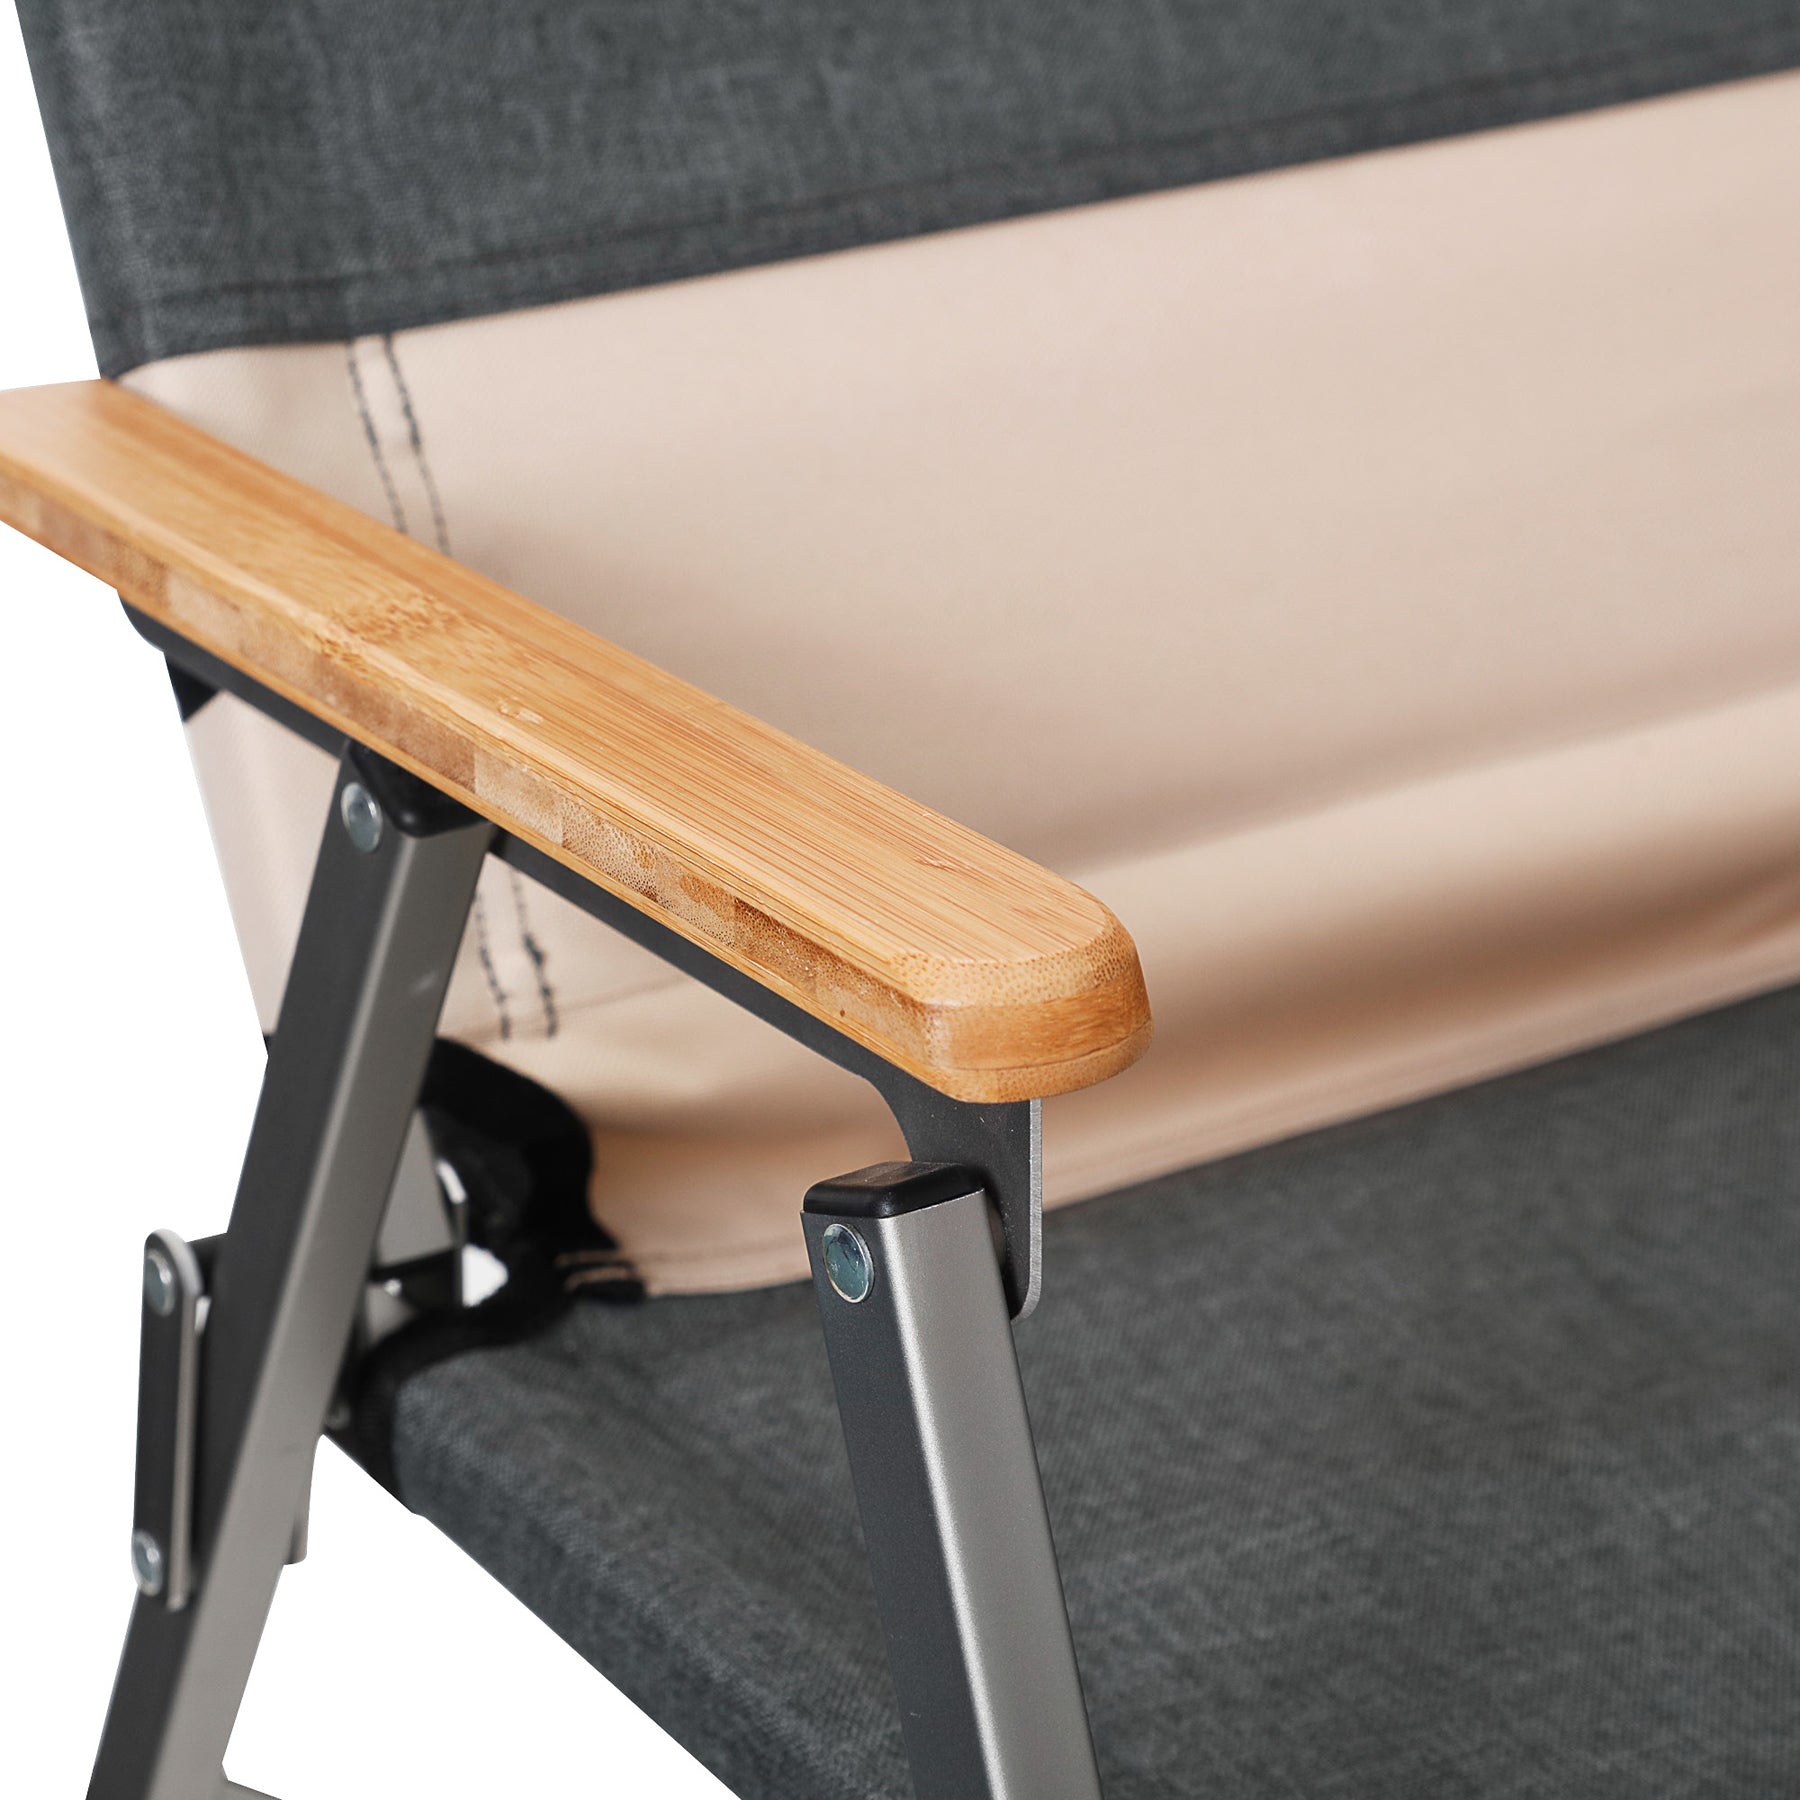 Свръх лек сгъваем стол за къмпинг. Подходящ за ван или кемпер с леки и компактни размери. Модерен дизайн с подлакътници от стествено дърво. Light folding chair for camping, modern design and sturdy materials. Natural wood armrests.